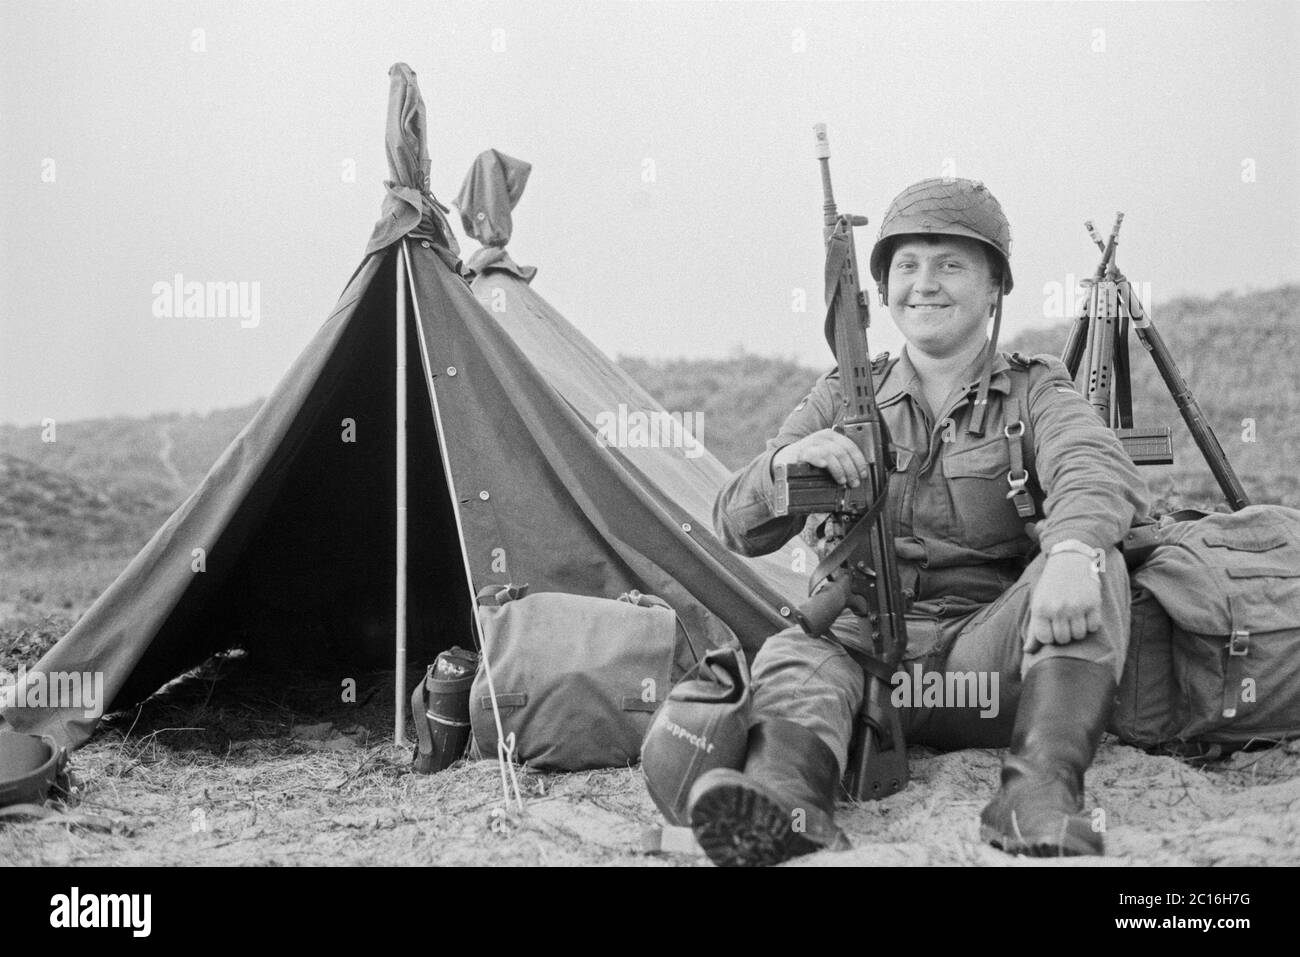 Soldat posant pour la photo, manœuvre de la marine, entraînement de base, septembre 1981, île de Borkum, Basse-Saxe, Allemagne Banque D'Images